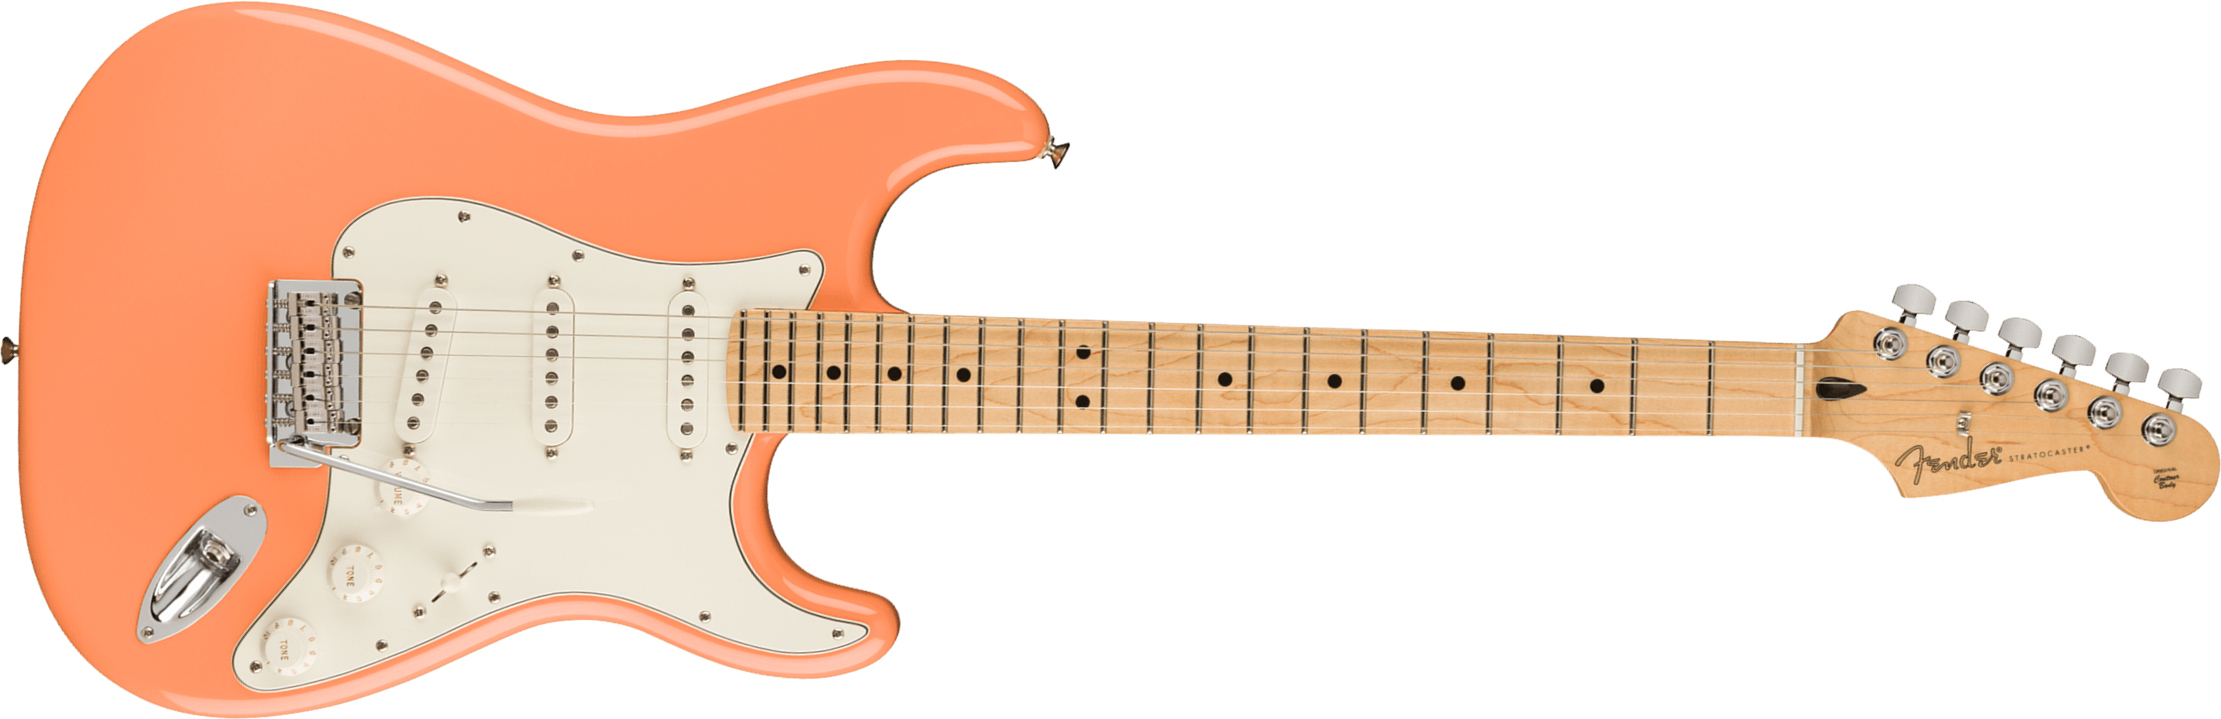 Fender Strat Player Ltd Mex 3s Trem Mn - Pacific Peach - Guitare Électrique Forme Str - Main picture